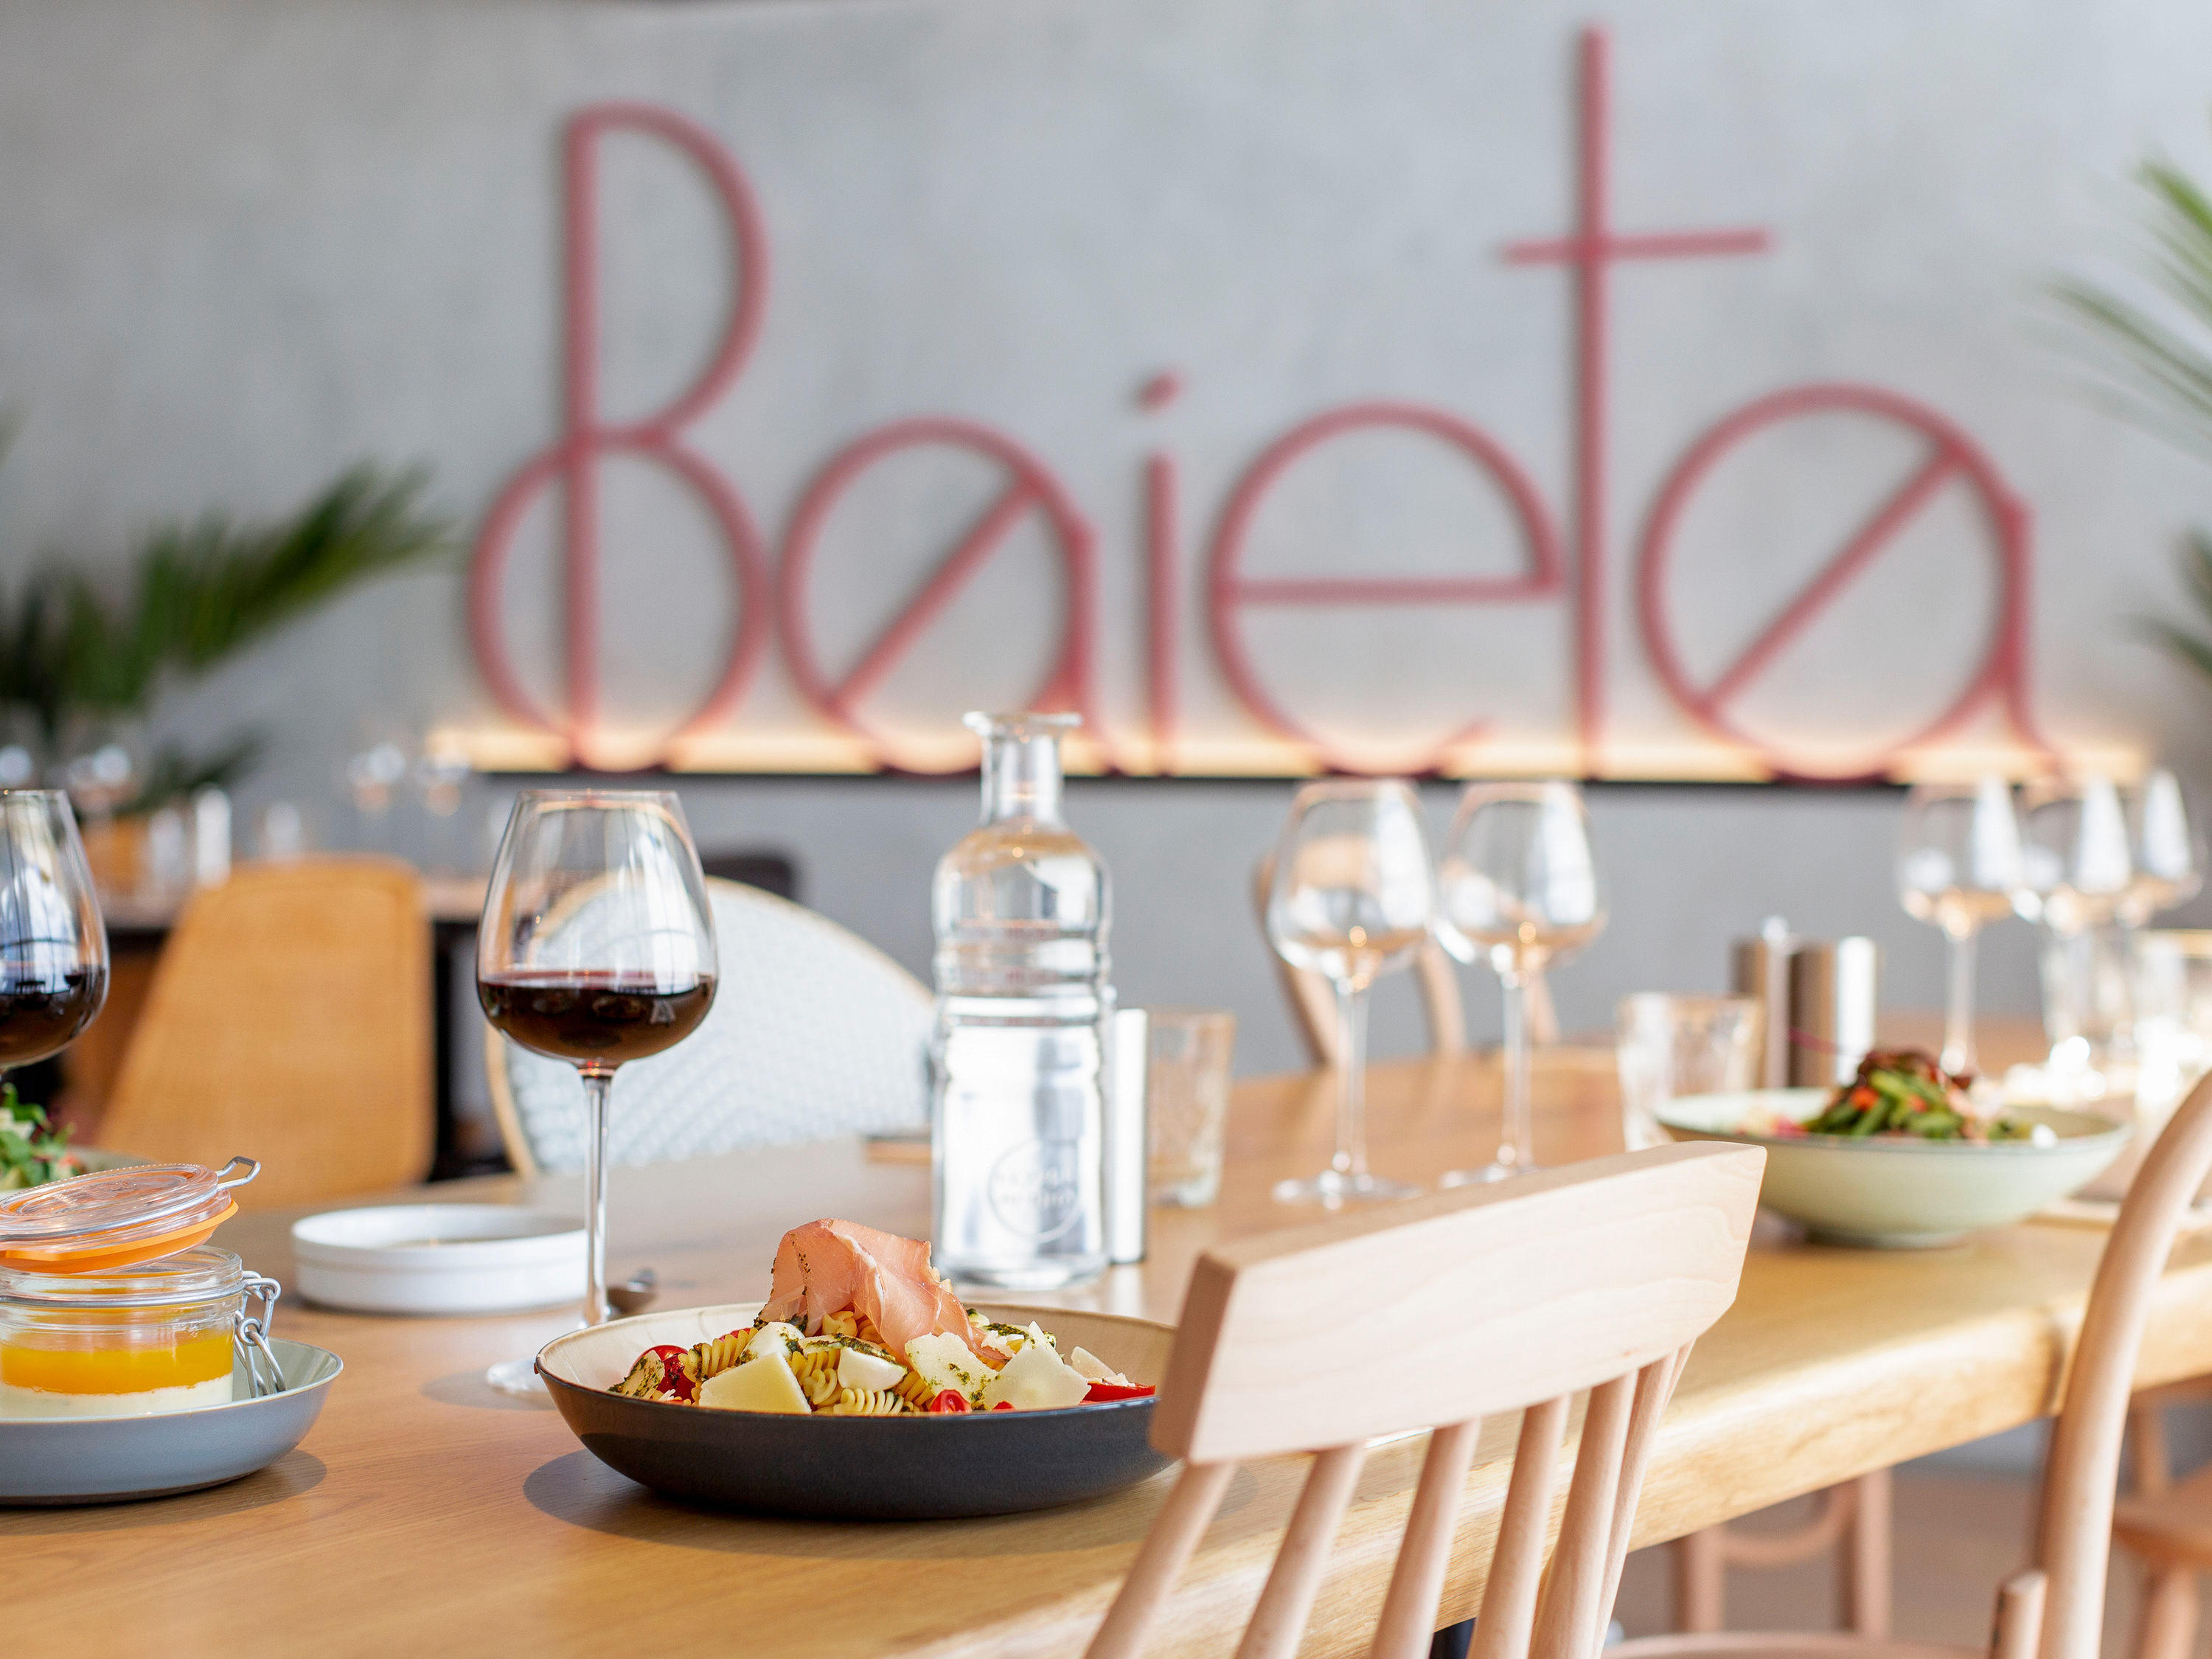 Baieta - Restaurant - Nice - 04 93 83 30 30 France | ShowMeLocal.com